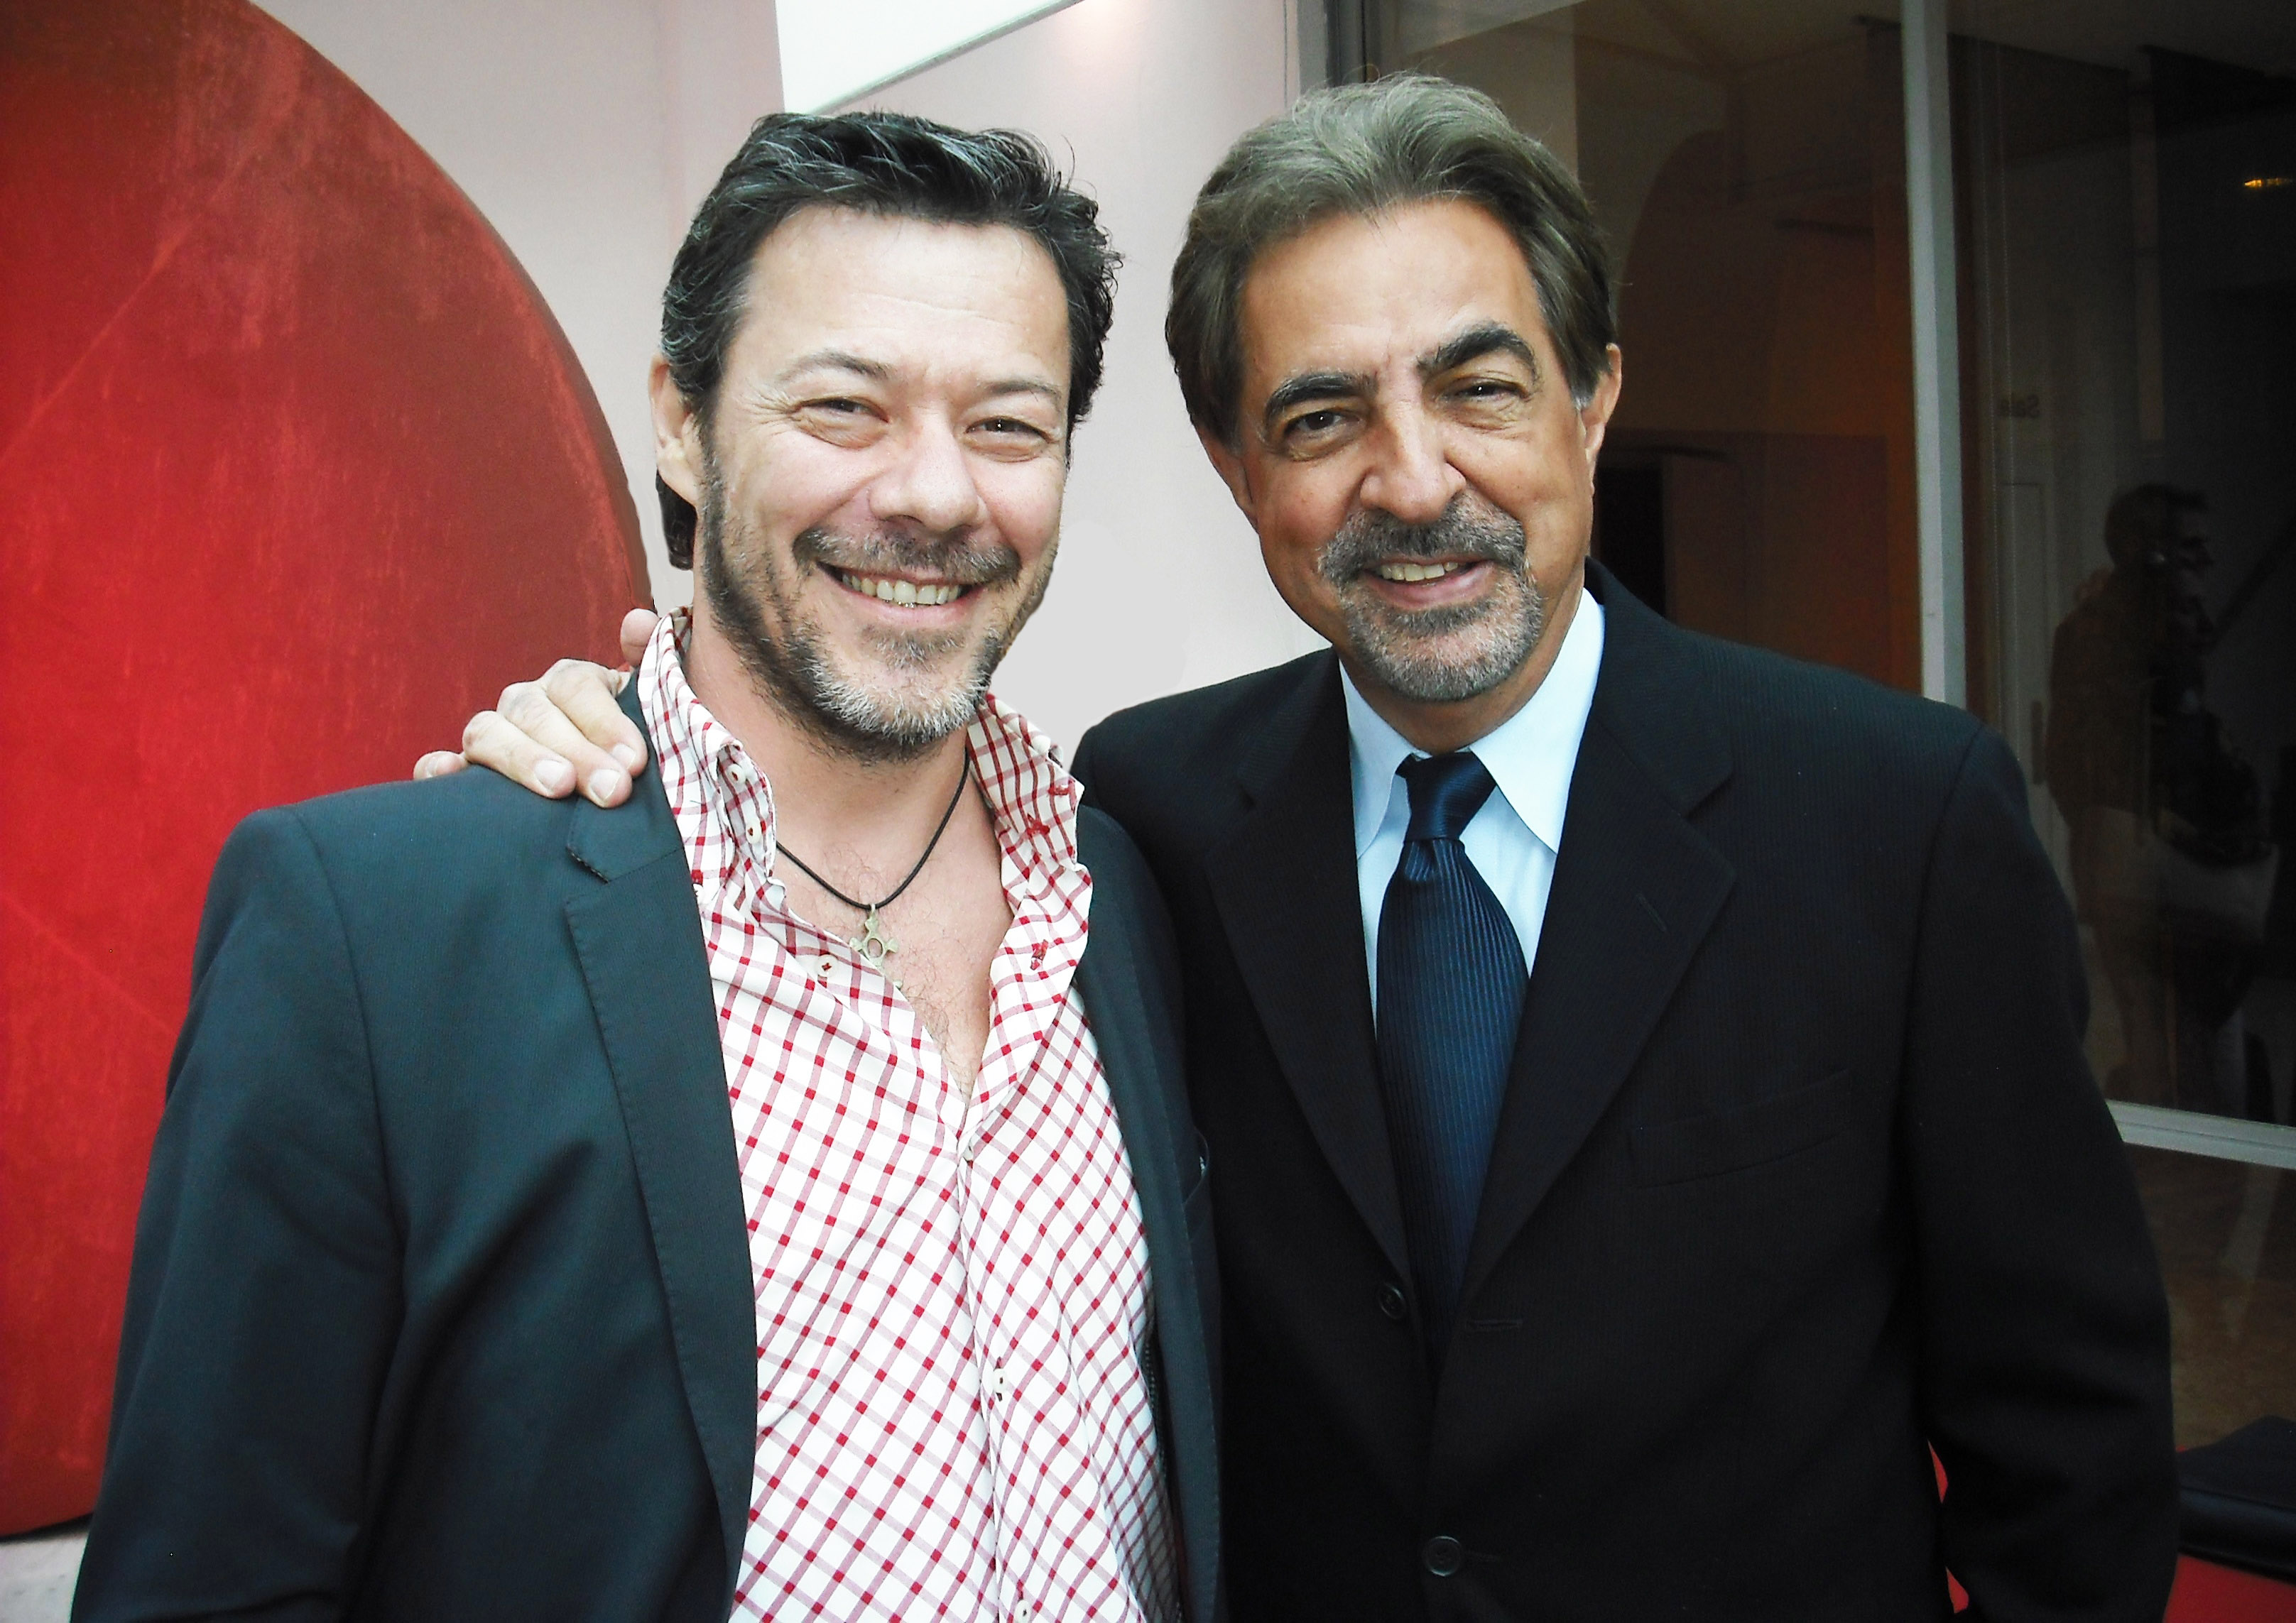 Massi Furlan with Joe Mantegna at Italian Cultural Institute.